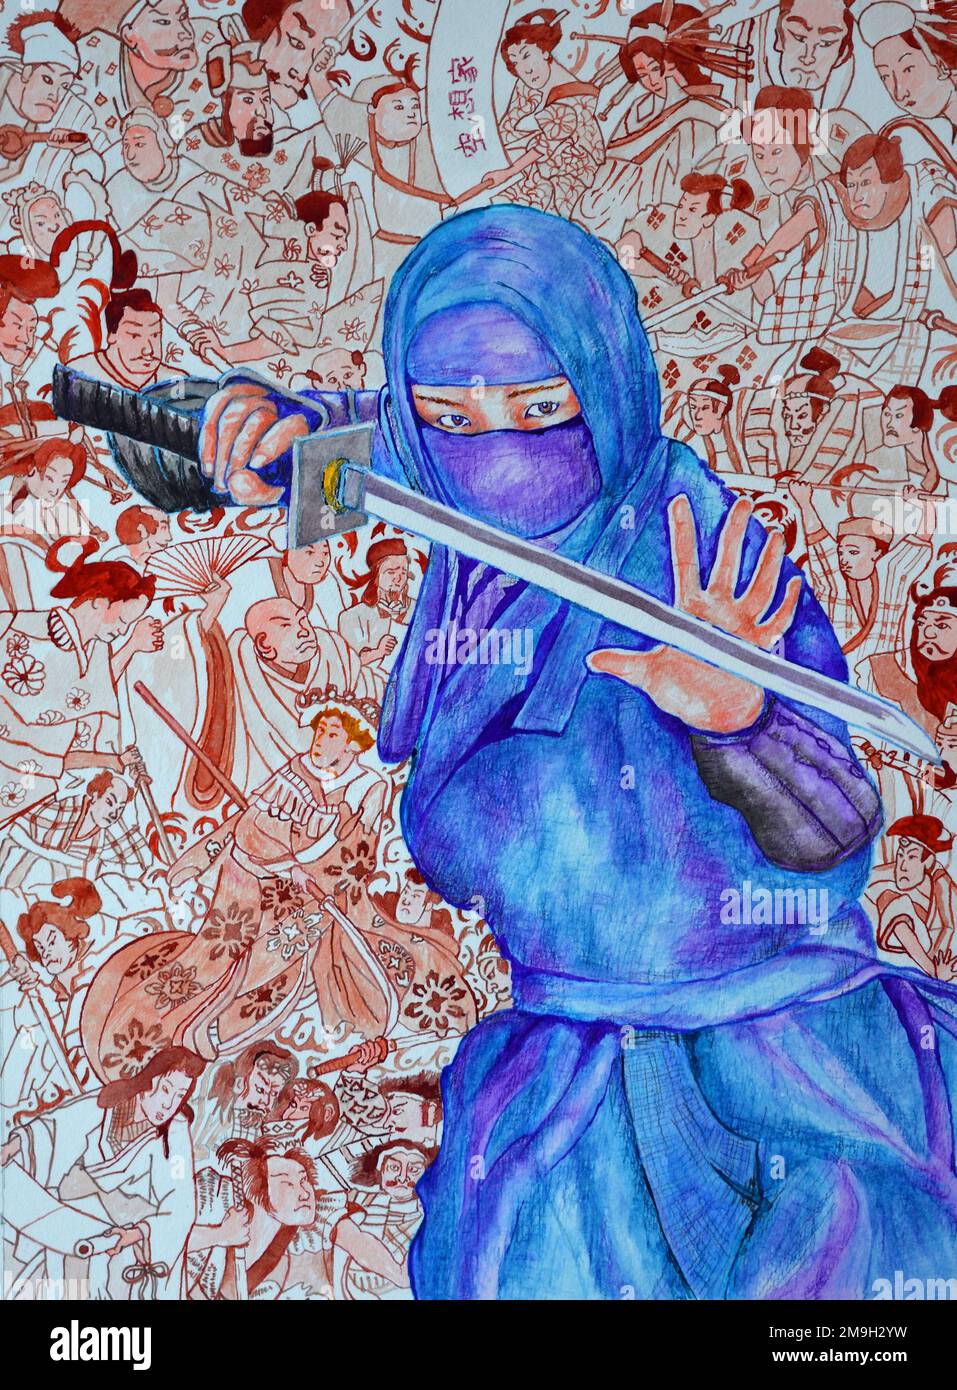 Vetores de Personagem De Assassino Ninja Em Um Traje Completo Preto Lutar  Com Garras Arte Marcial Japonesa Vector Ilustração e mais imagens de Adulto  - iStock